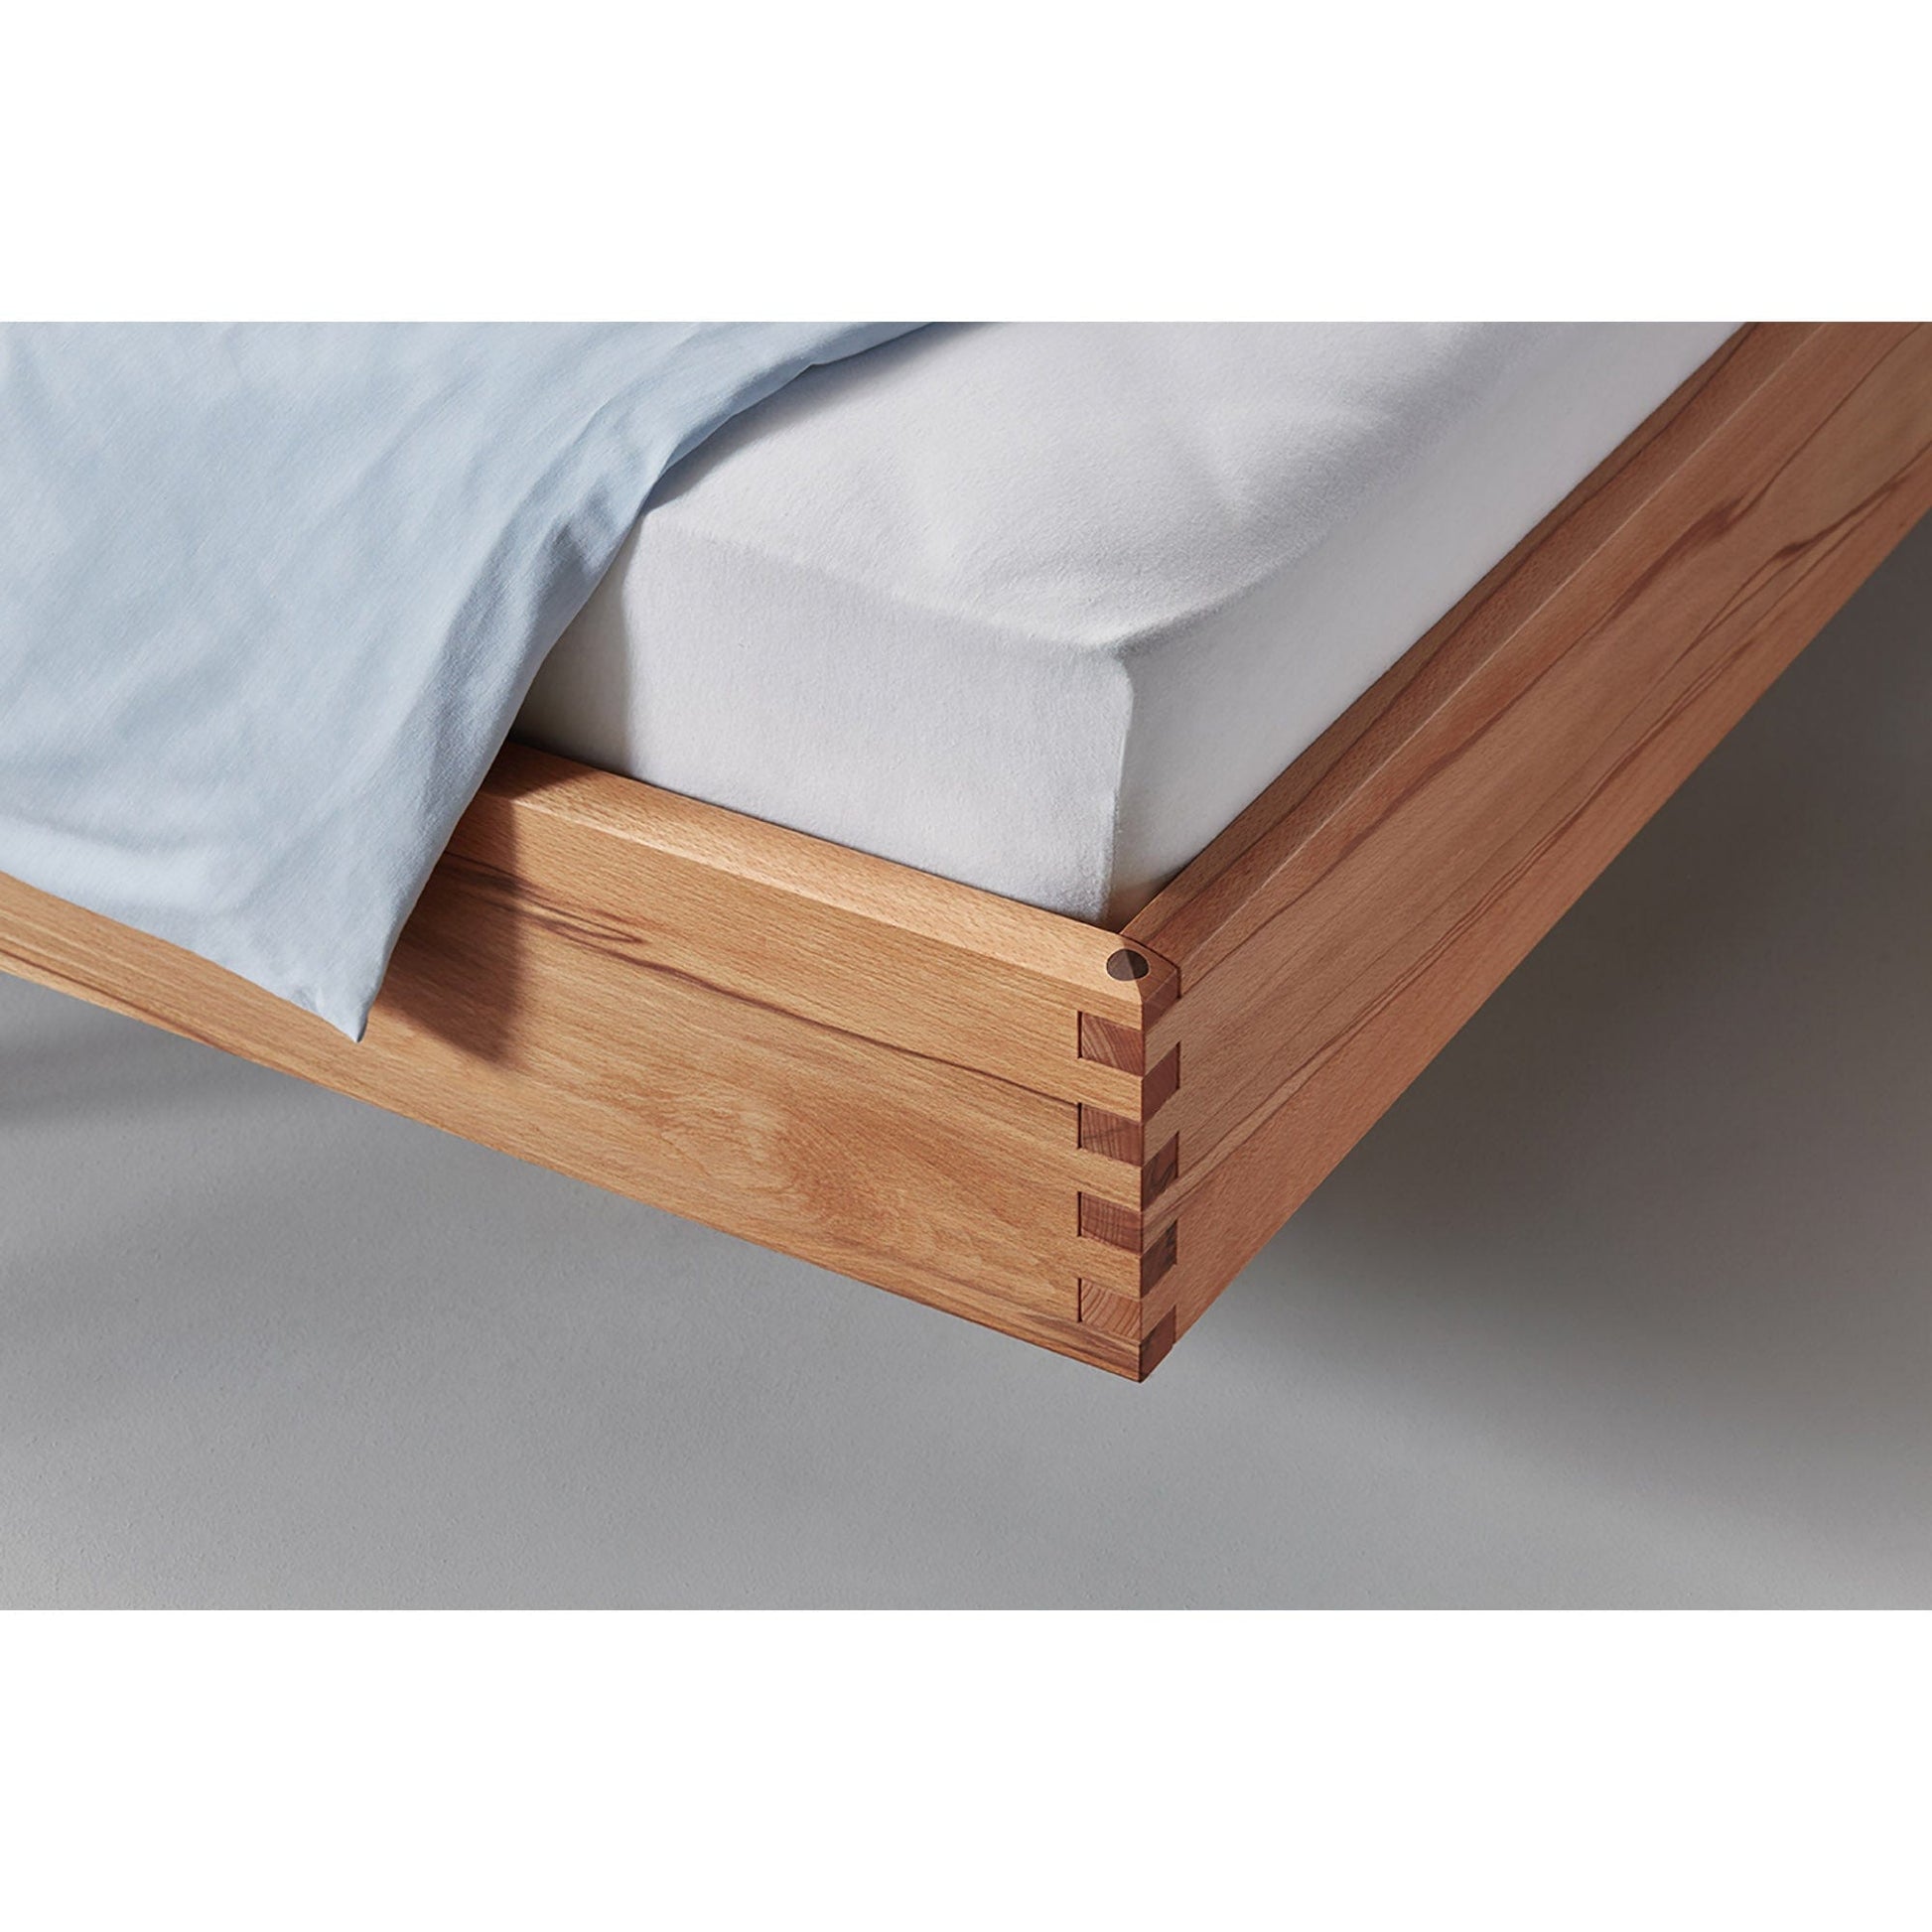 Kufenbetten metallfrei der Holzmanufaktur - Hochwertige und handwerkliche Betten aus unserer Schreinerei.